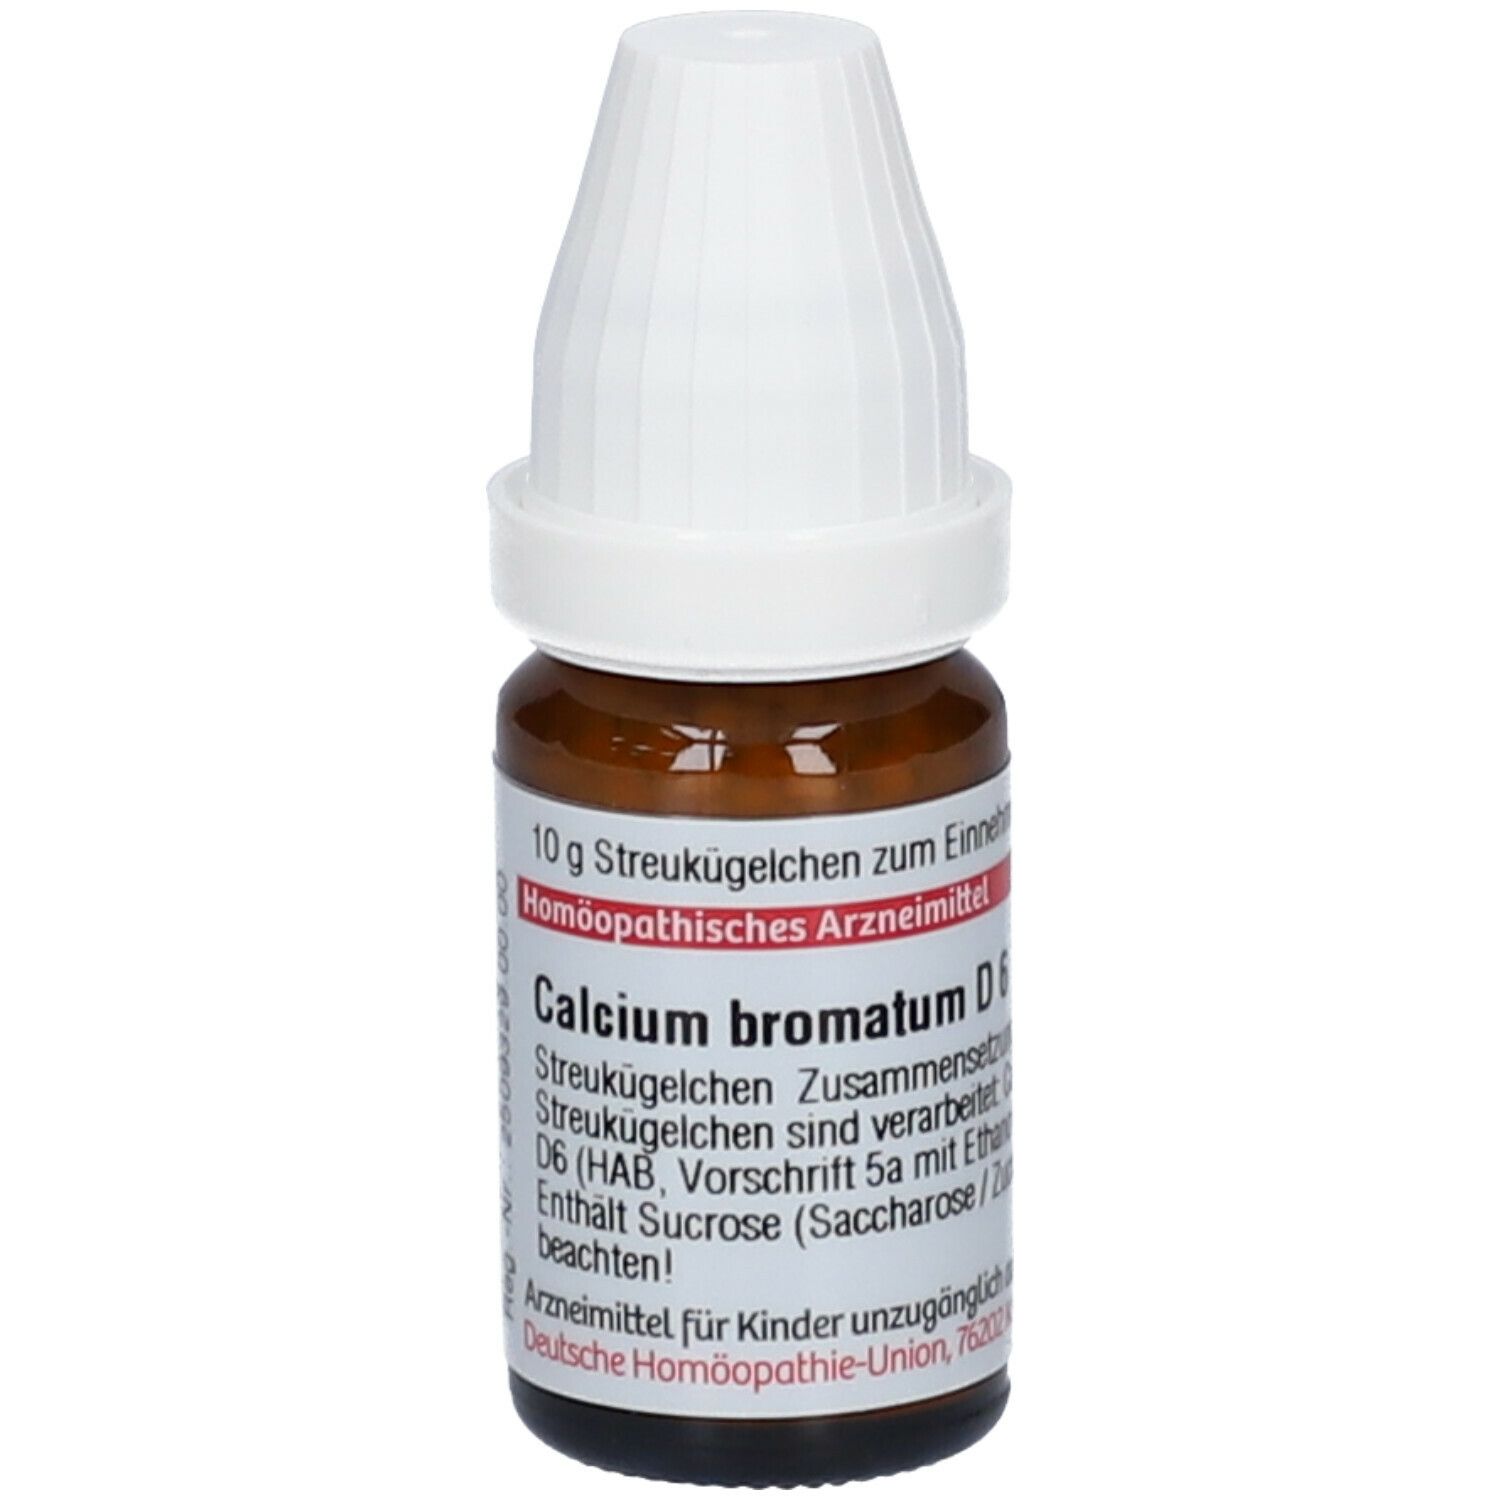 DHU Calcium Bromatum D6